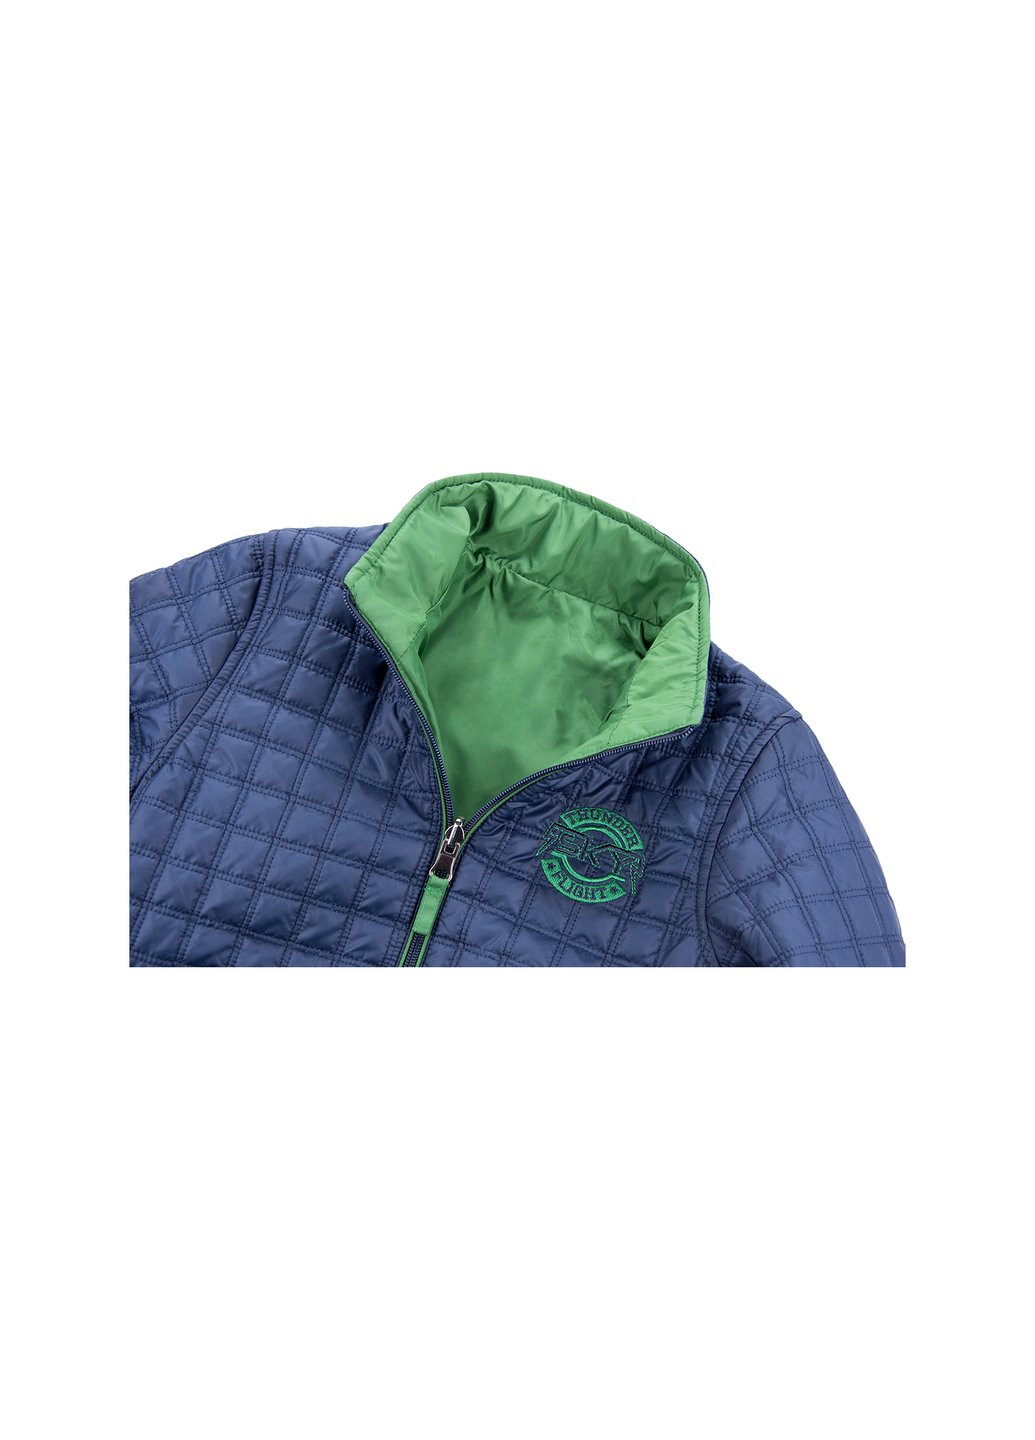 Голубая демисезонная куртка двухсторонняя синяя и зеленая (3278-128b-blue-green) Verscon